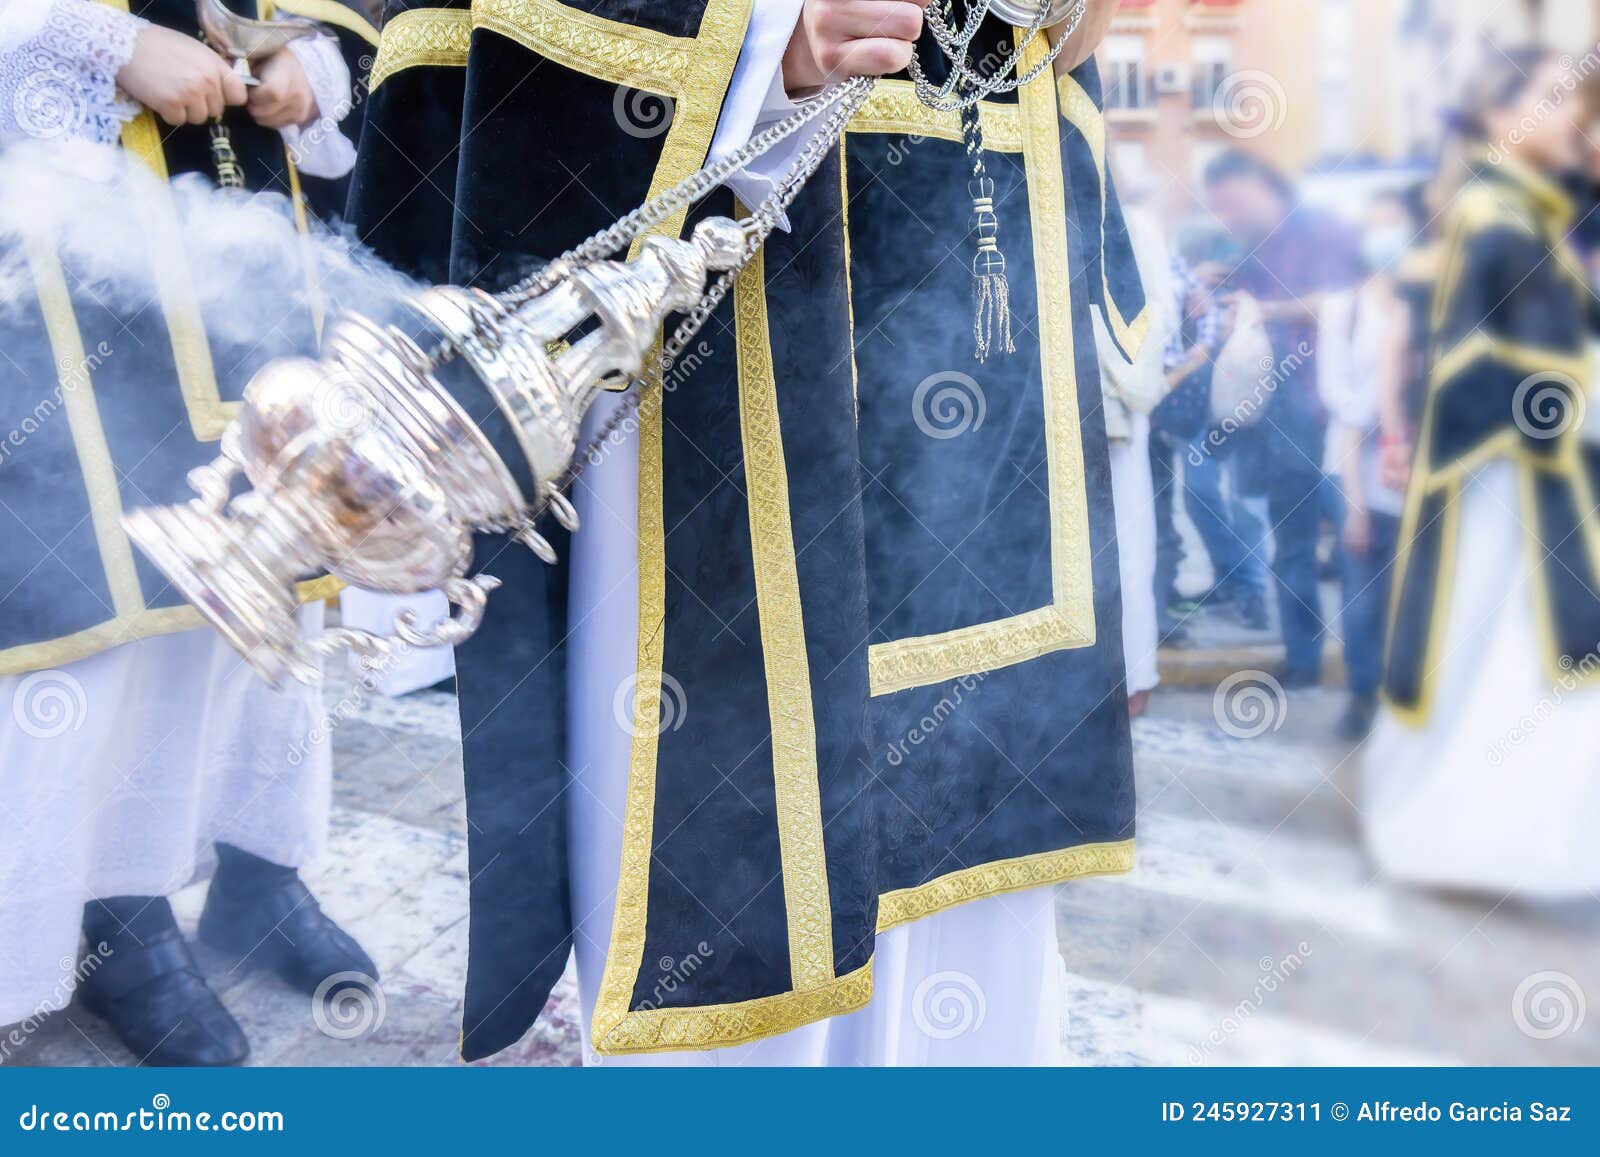 Altar Boy Mirando Con Una Cuchara Incienso Plata Incensario Durante:  fotografía de stock © YAYImages #260261132